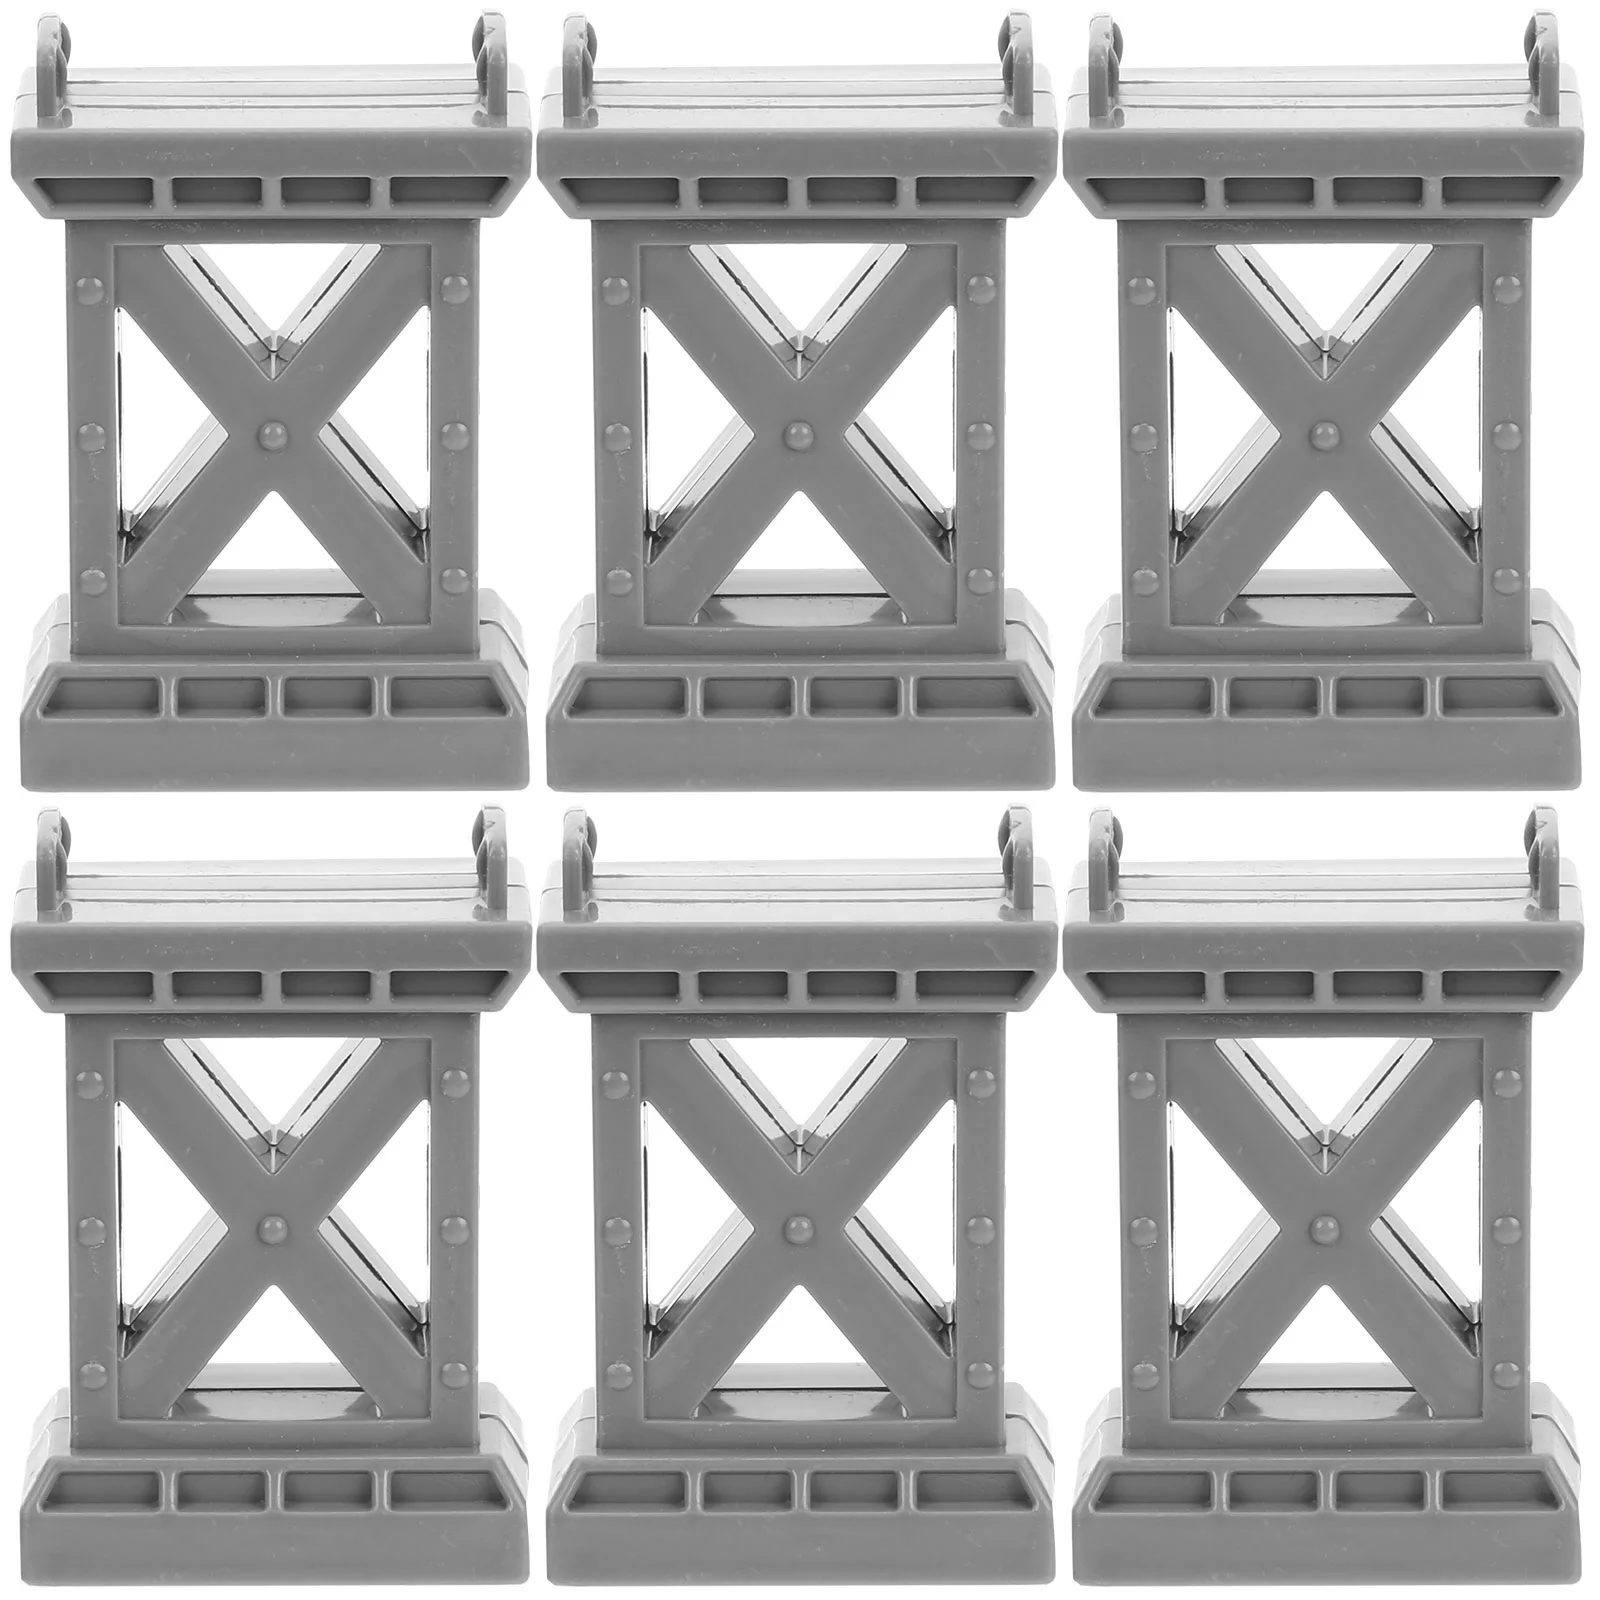 

6 Pcs Train Pier Bridge Support Wooden Track Risers Suspension Accessories Plastic Supports Brio